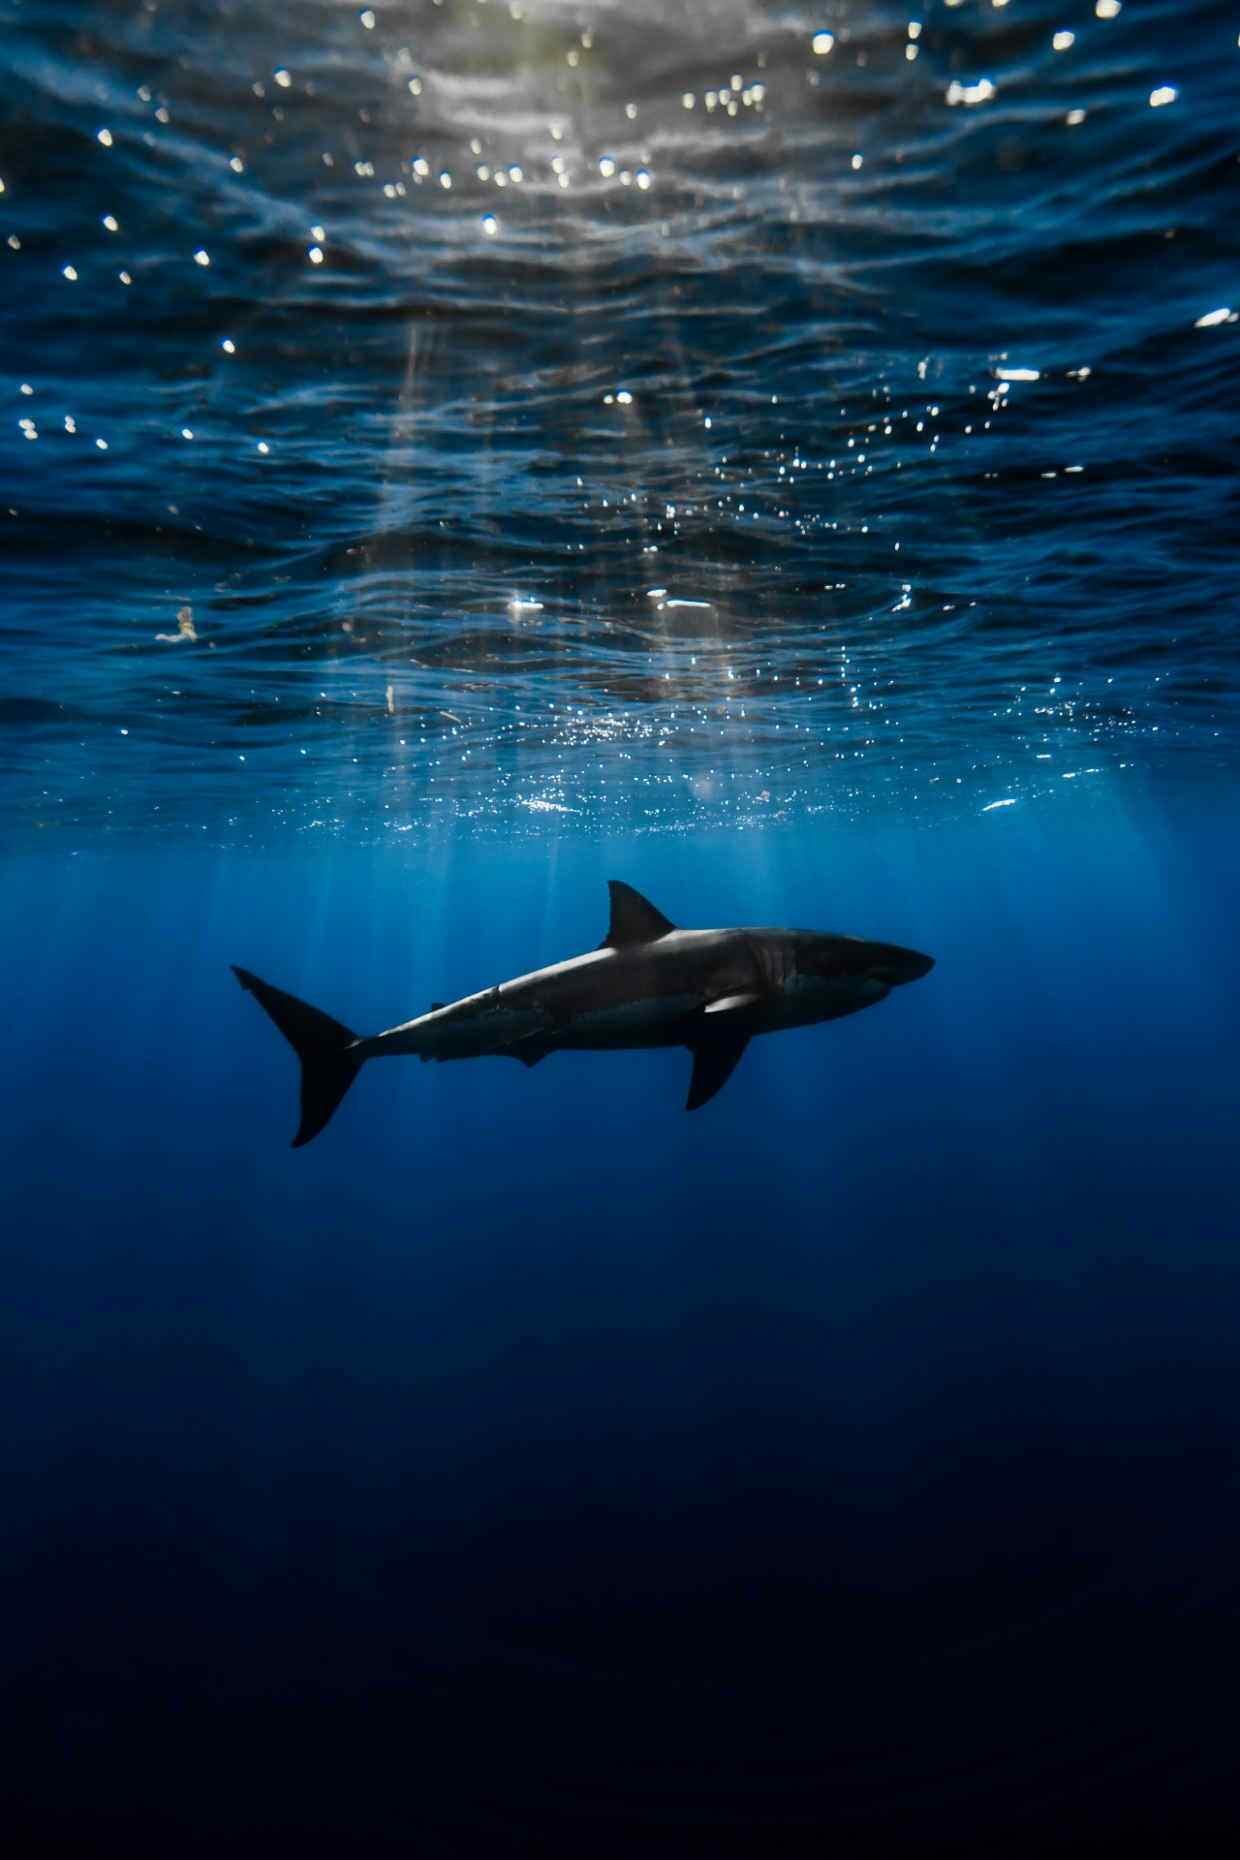 海底鲨鱼与曙光风景手机壁纸